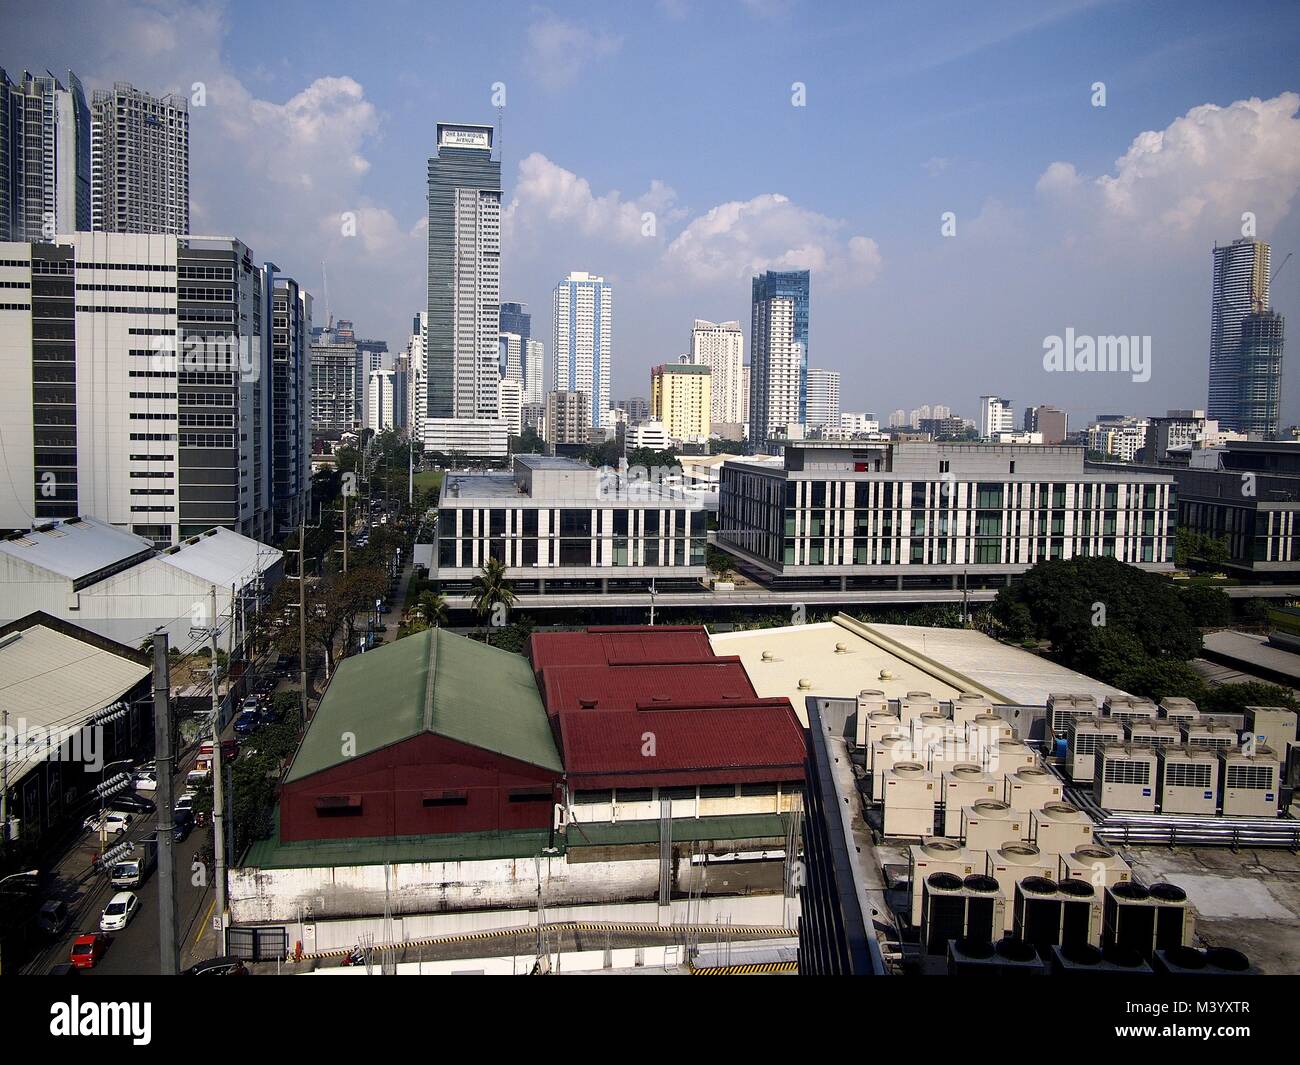 MANDALUYONG City, Filippine - Febbraio 1, 2018: Edifici e grattacieli nel quartiere centrale degli affari di Mandaluyong City, Filippine. Foto Stock